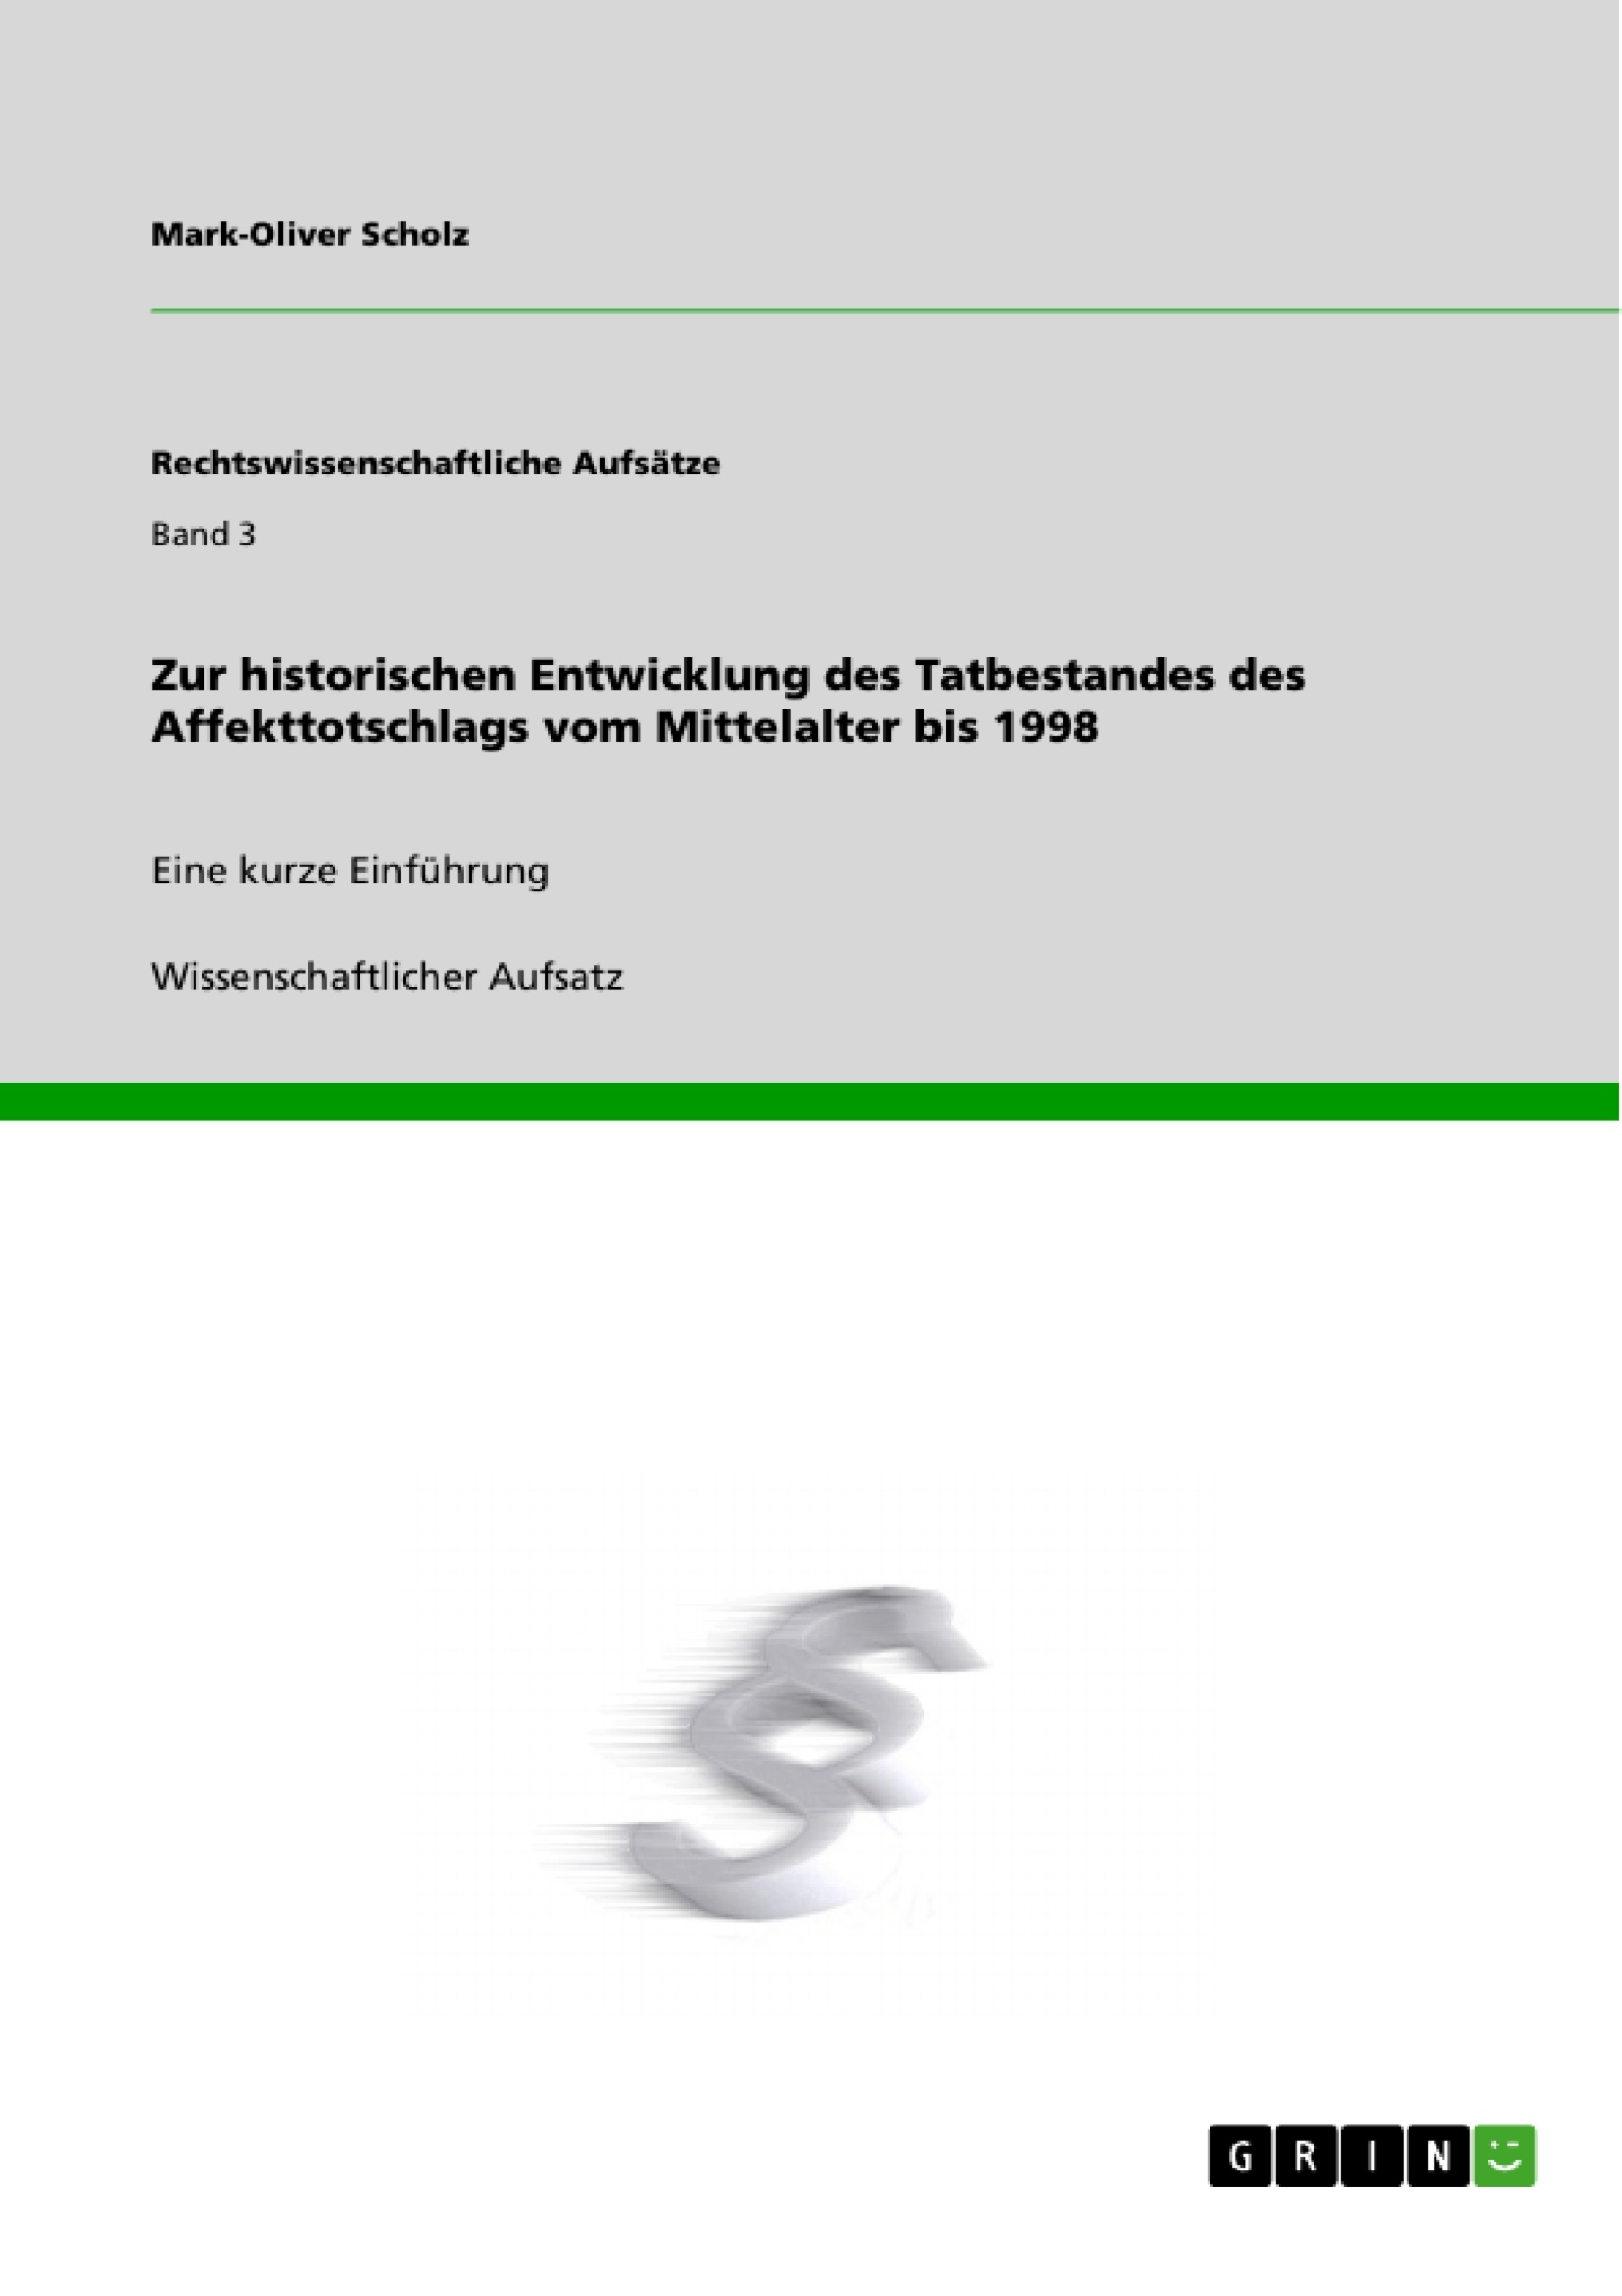 Titel: Zur historischen Entwicklung des Tatbestandes des Affekttotschlags vom Mittelalter bis 1998